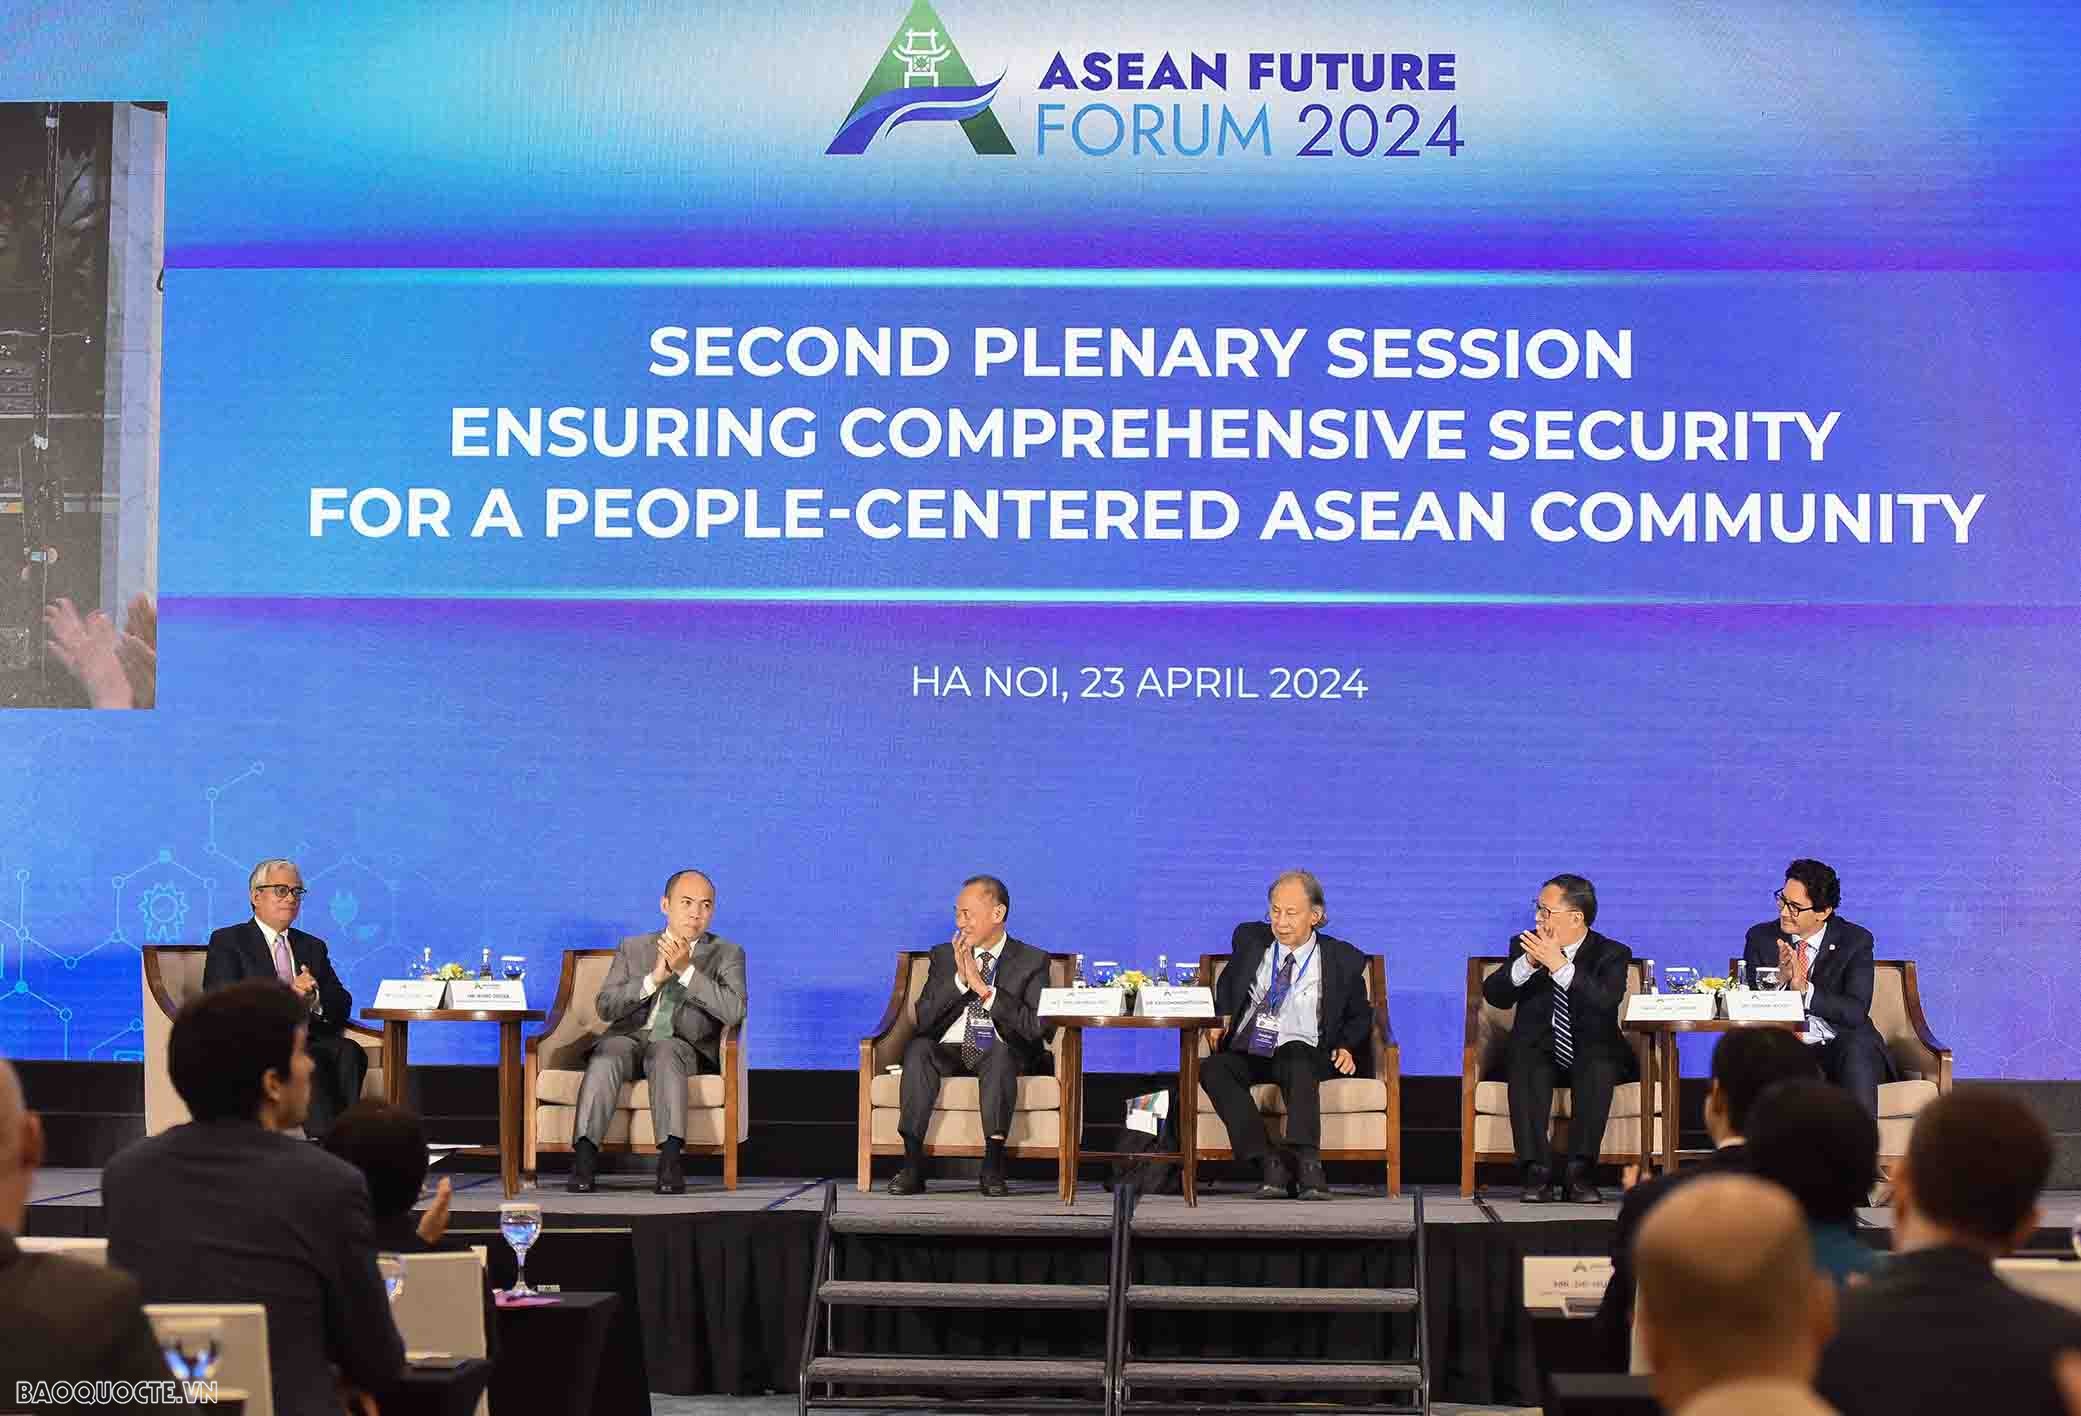 Sau Phiên Khai mạc vào buổi sáng 23/4, Diễn đàn Tương lai ASEAN 2024 tiếp tục với hai phiên toàn thể với chủ đề “ASEAN phát triển nhanh vì tương lai bền vững” và “Bảo đảm an ninh toàn diện vì Cộng đồng ASEAN lấy người dân làm trung tâm”.